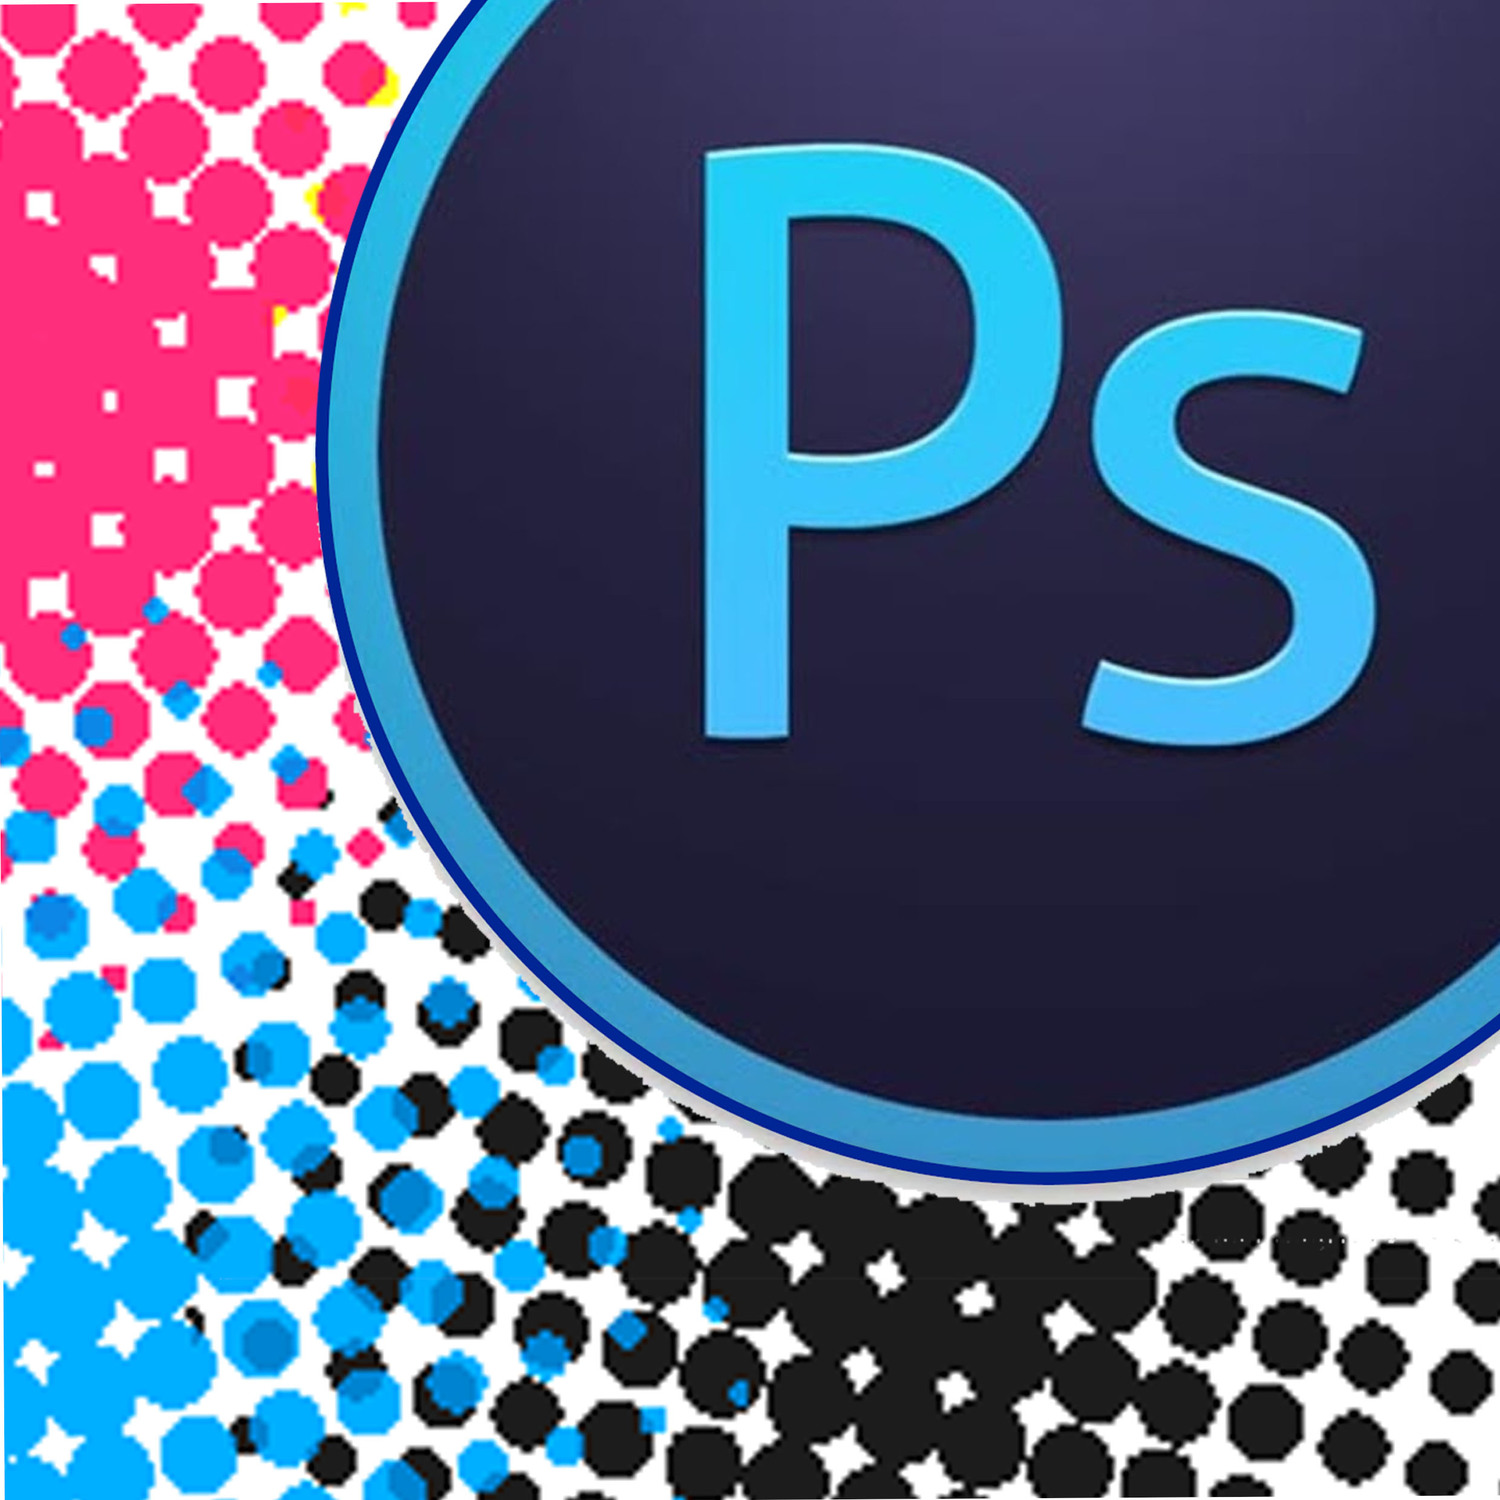 <span style="font-weight: bold;">Допечатная подготовка растровых изображений в Adobe Photoshop</span>